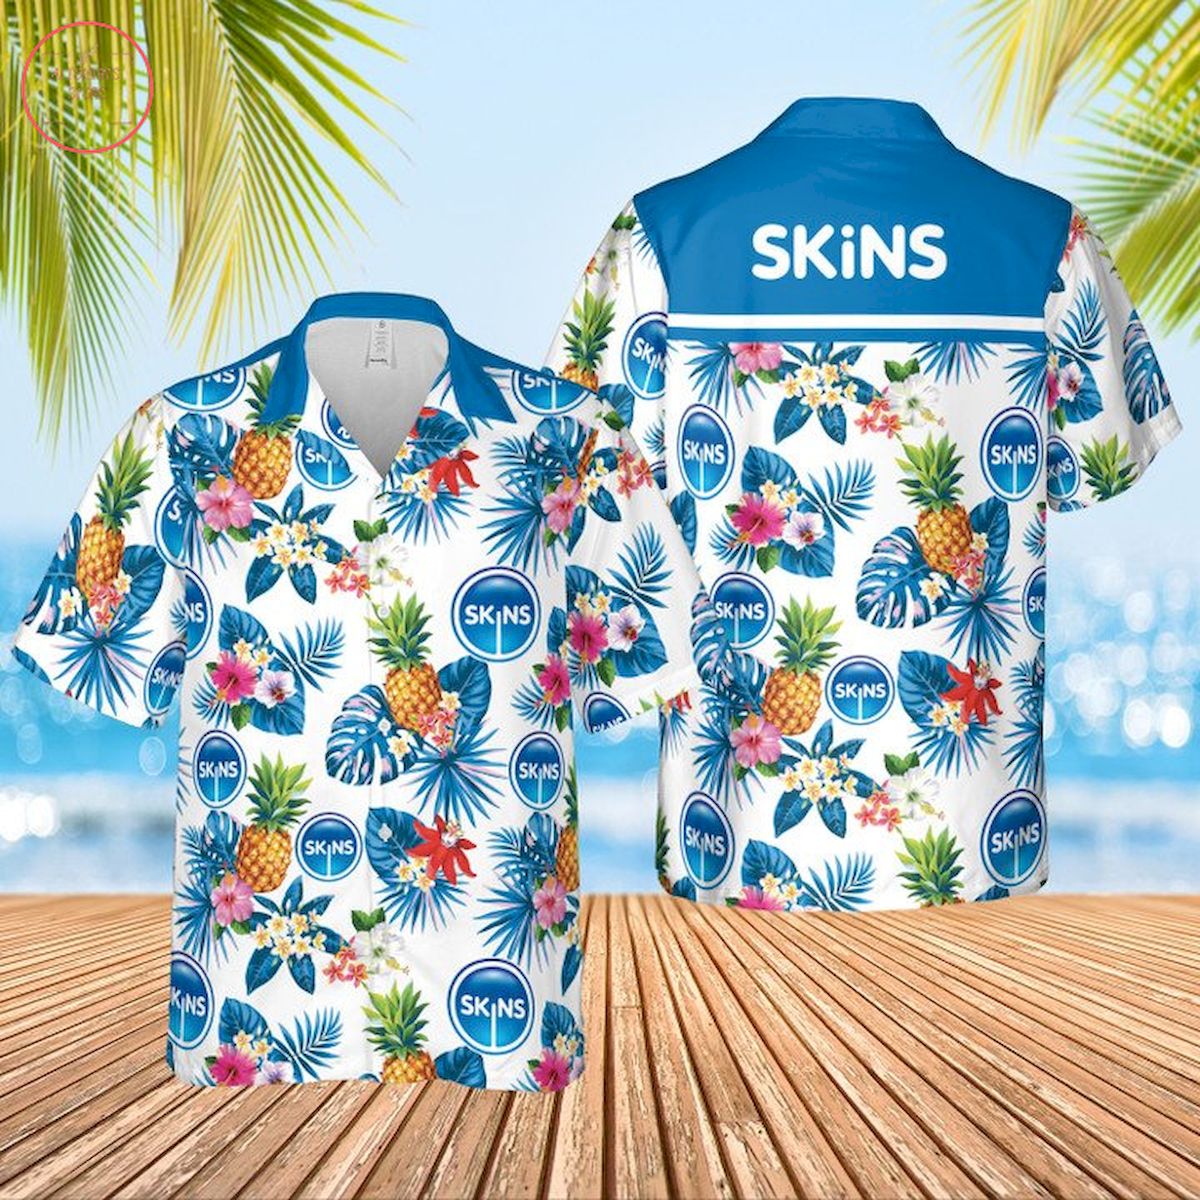 Skins Condoms Hawaiian Shirt and Shorts